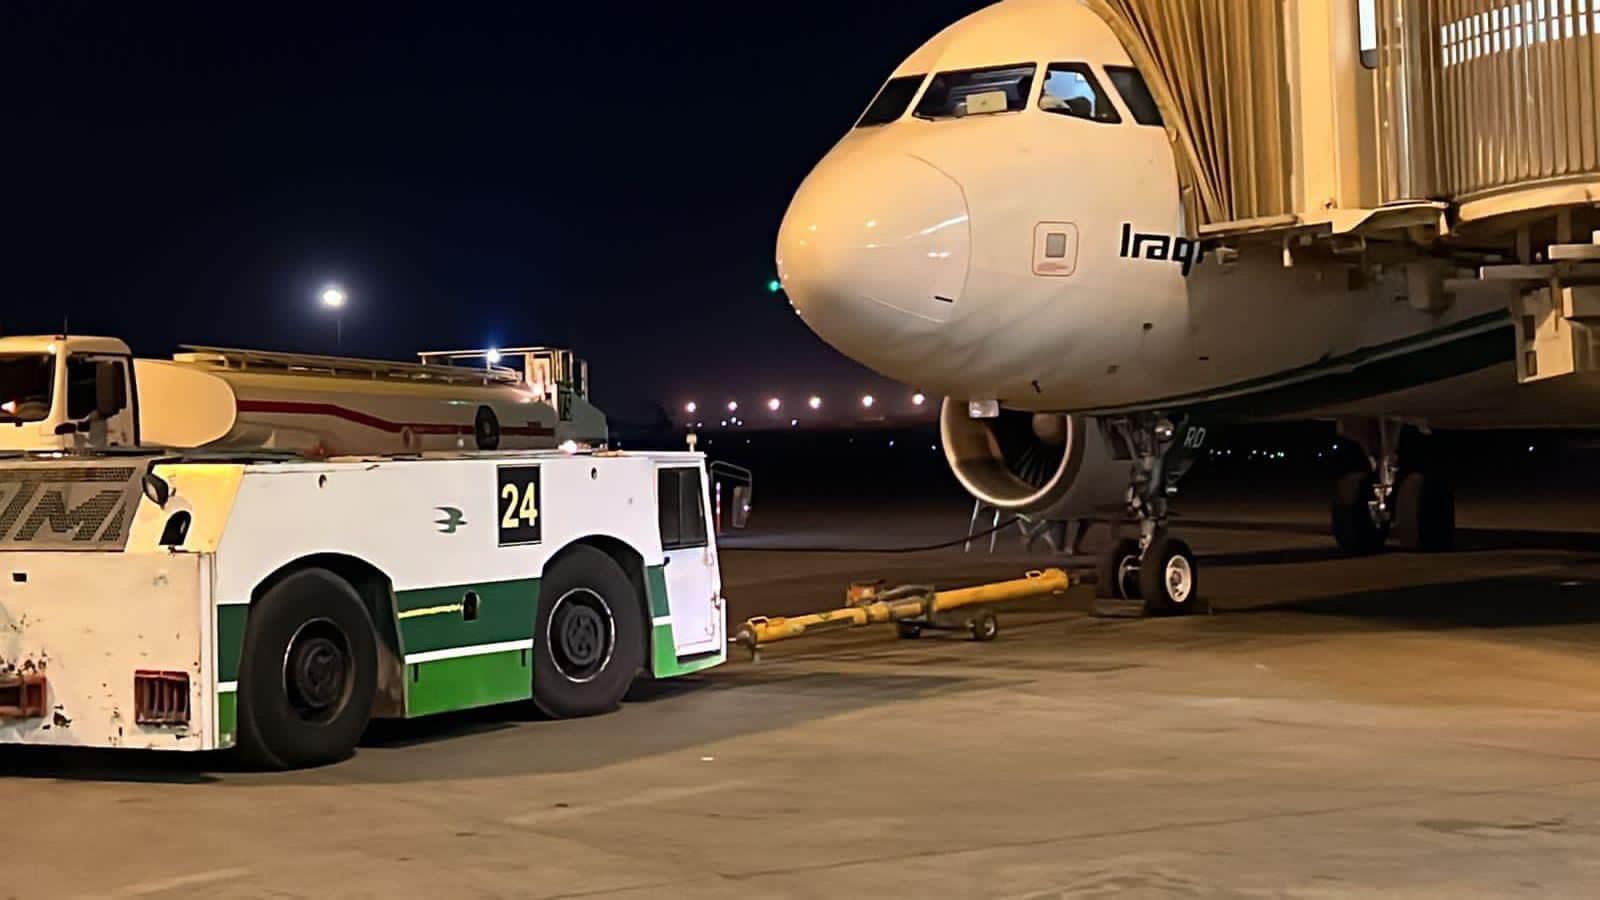 شركة تنسحب من مطار بغداد بشكل مفاجئ والخطوط العراقية تلوح بإجراءات قانونية